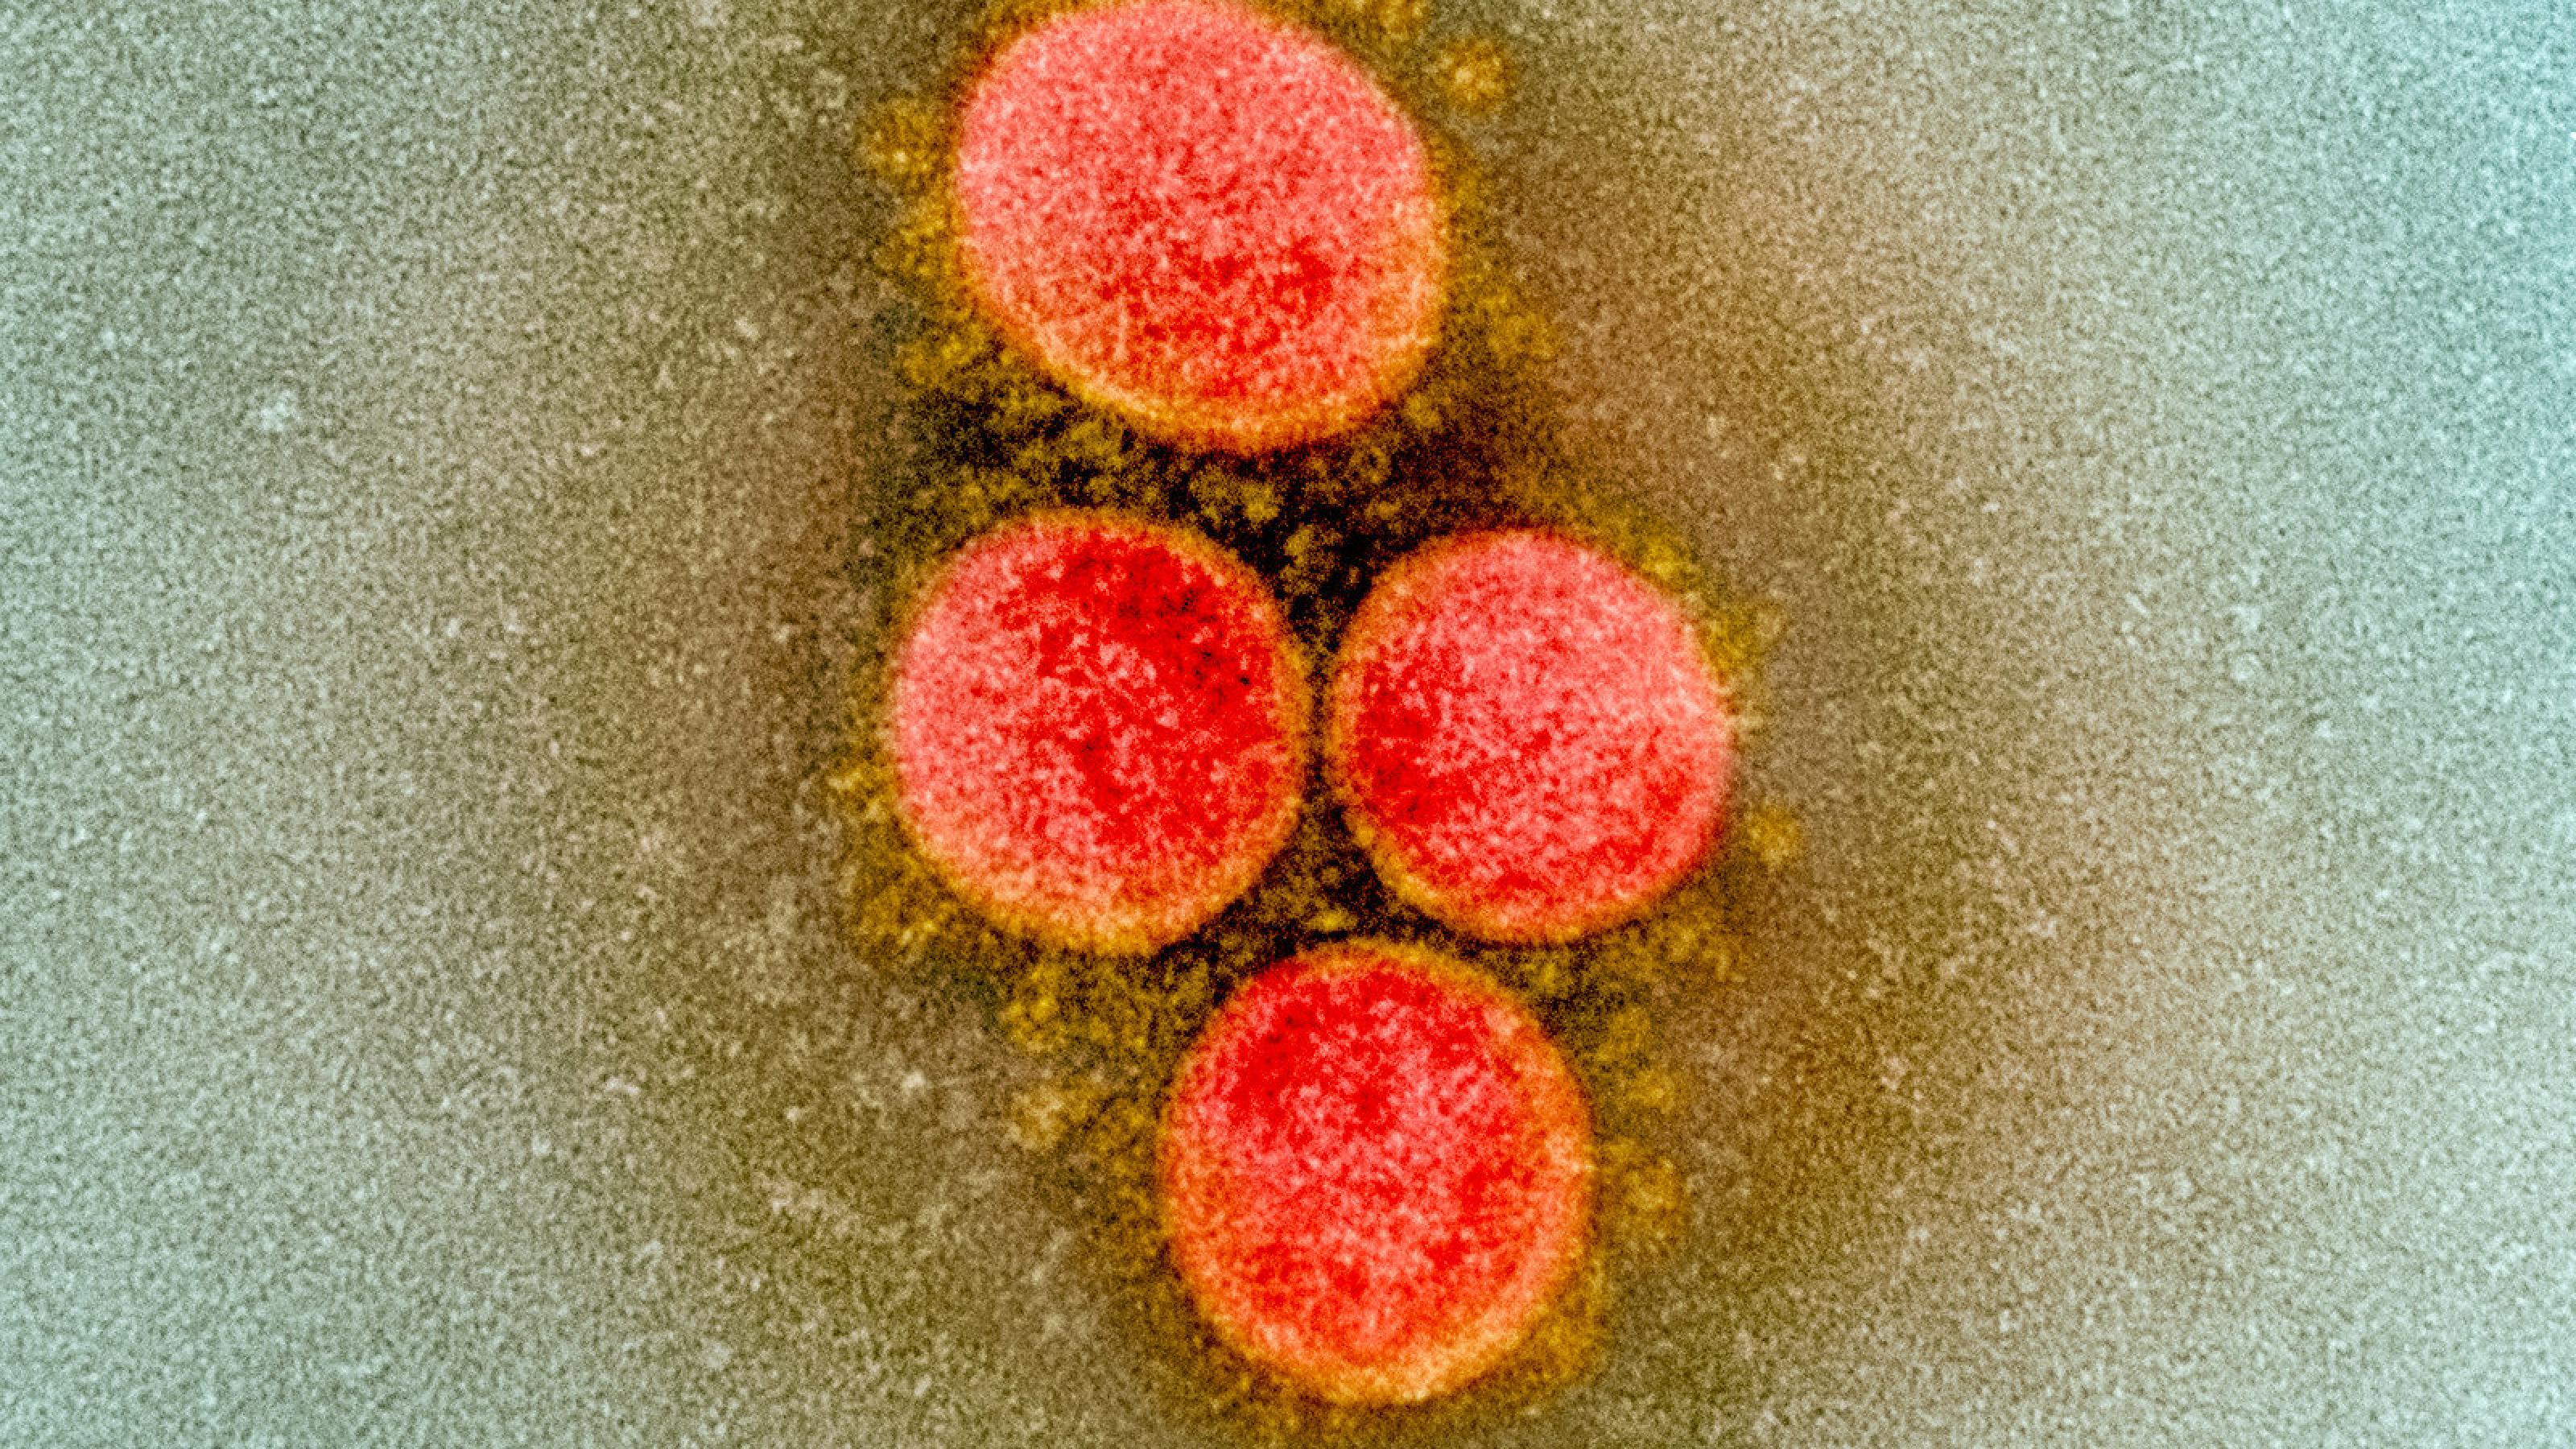 Das Bild zeigt eine elektronenmikroskopische Aufnahme des Sars-CoV-2, die Viren sind rot angefärbt